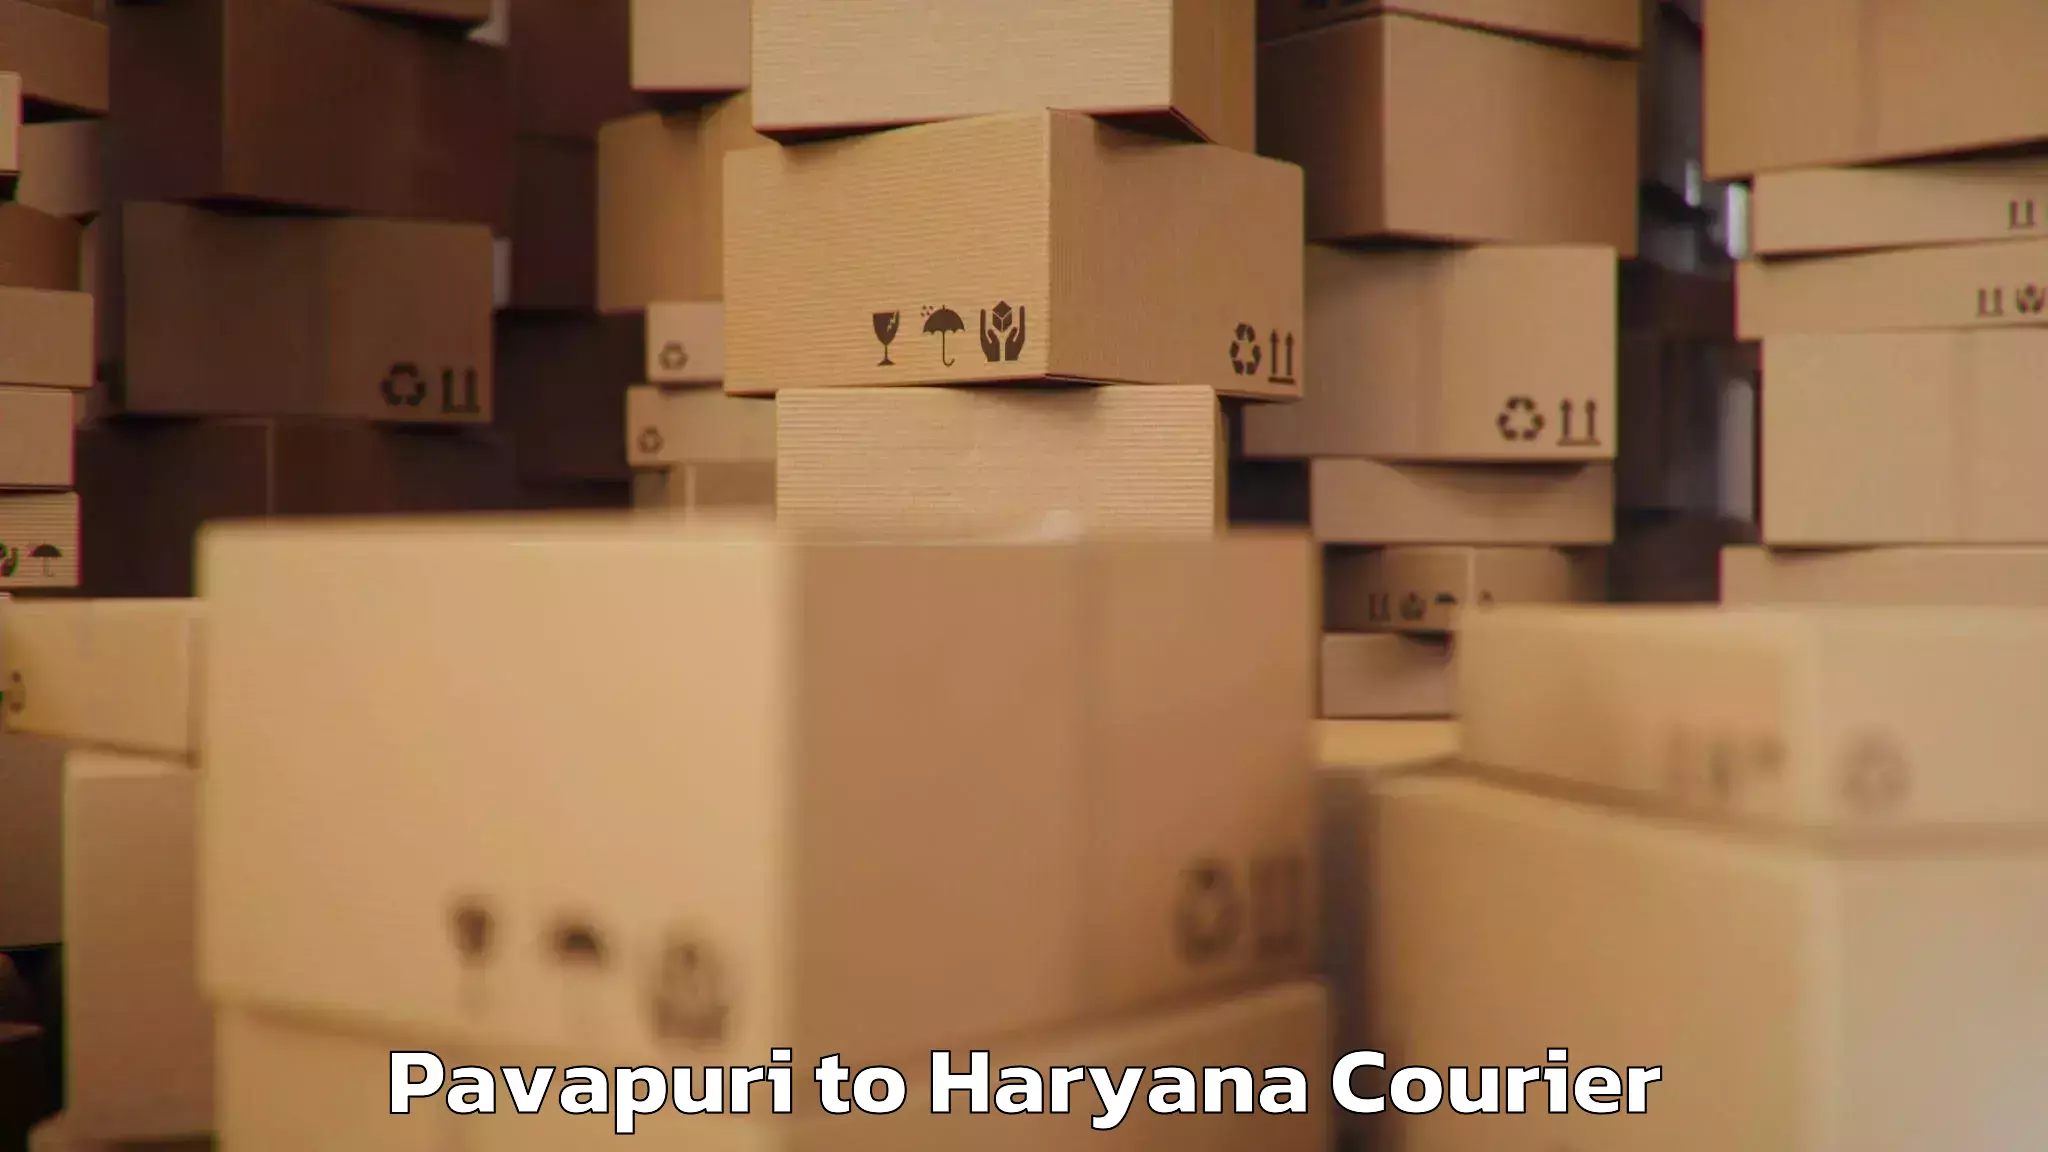 Luggage transfer service Pavapuri to Haryana